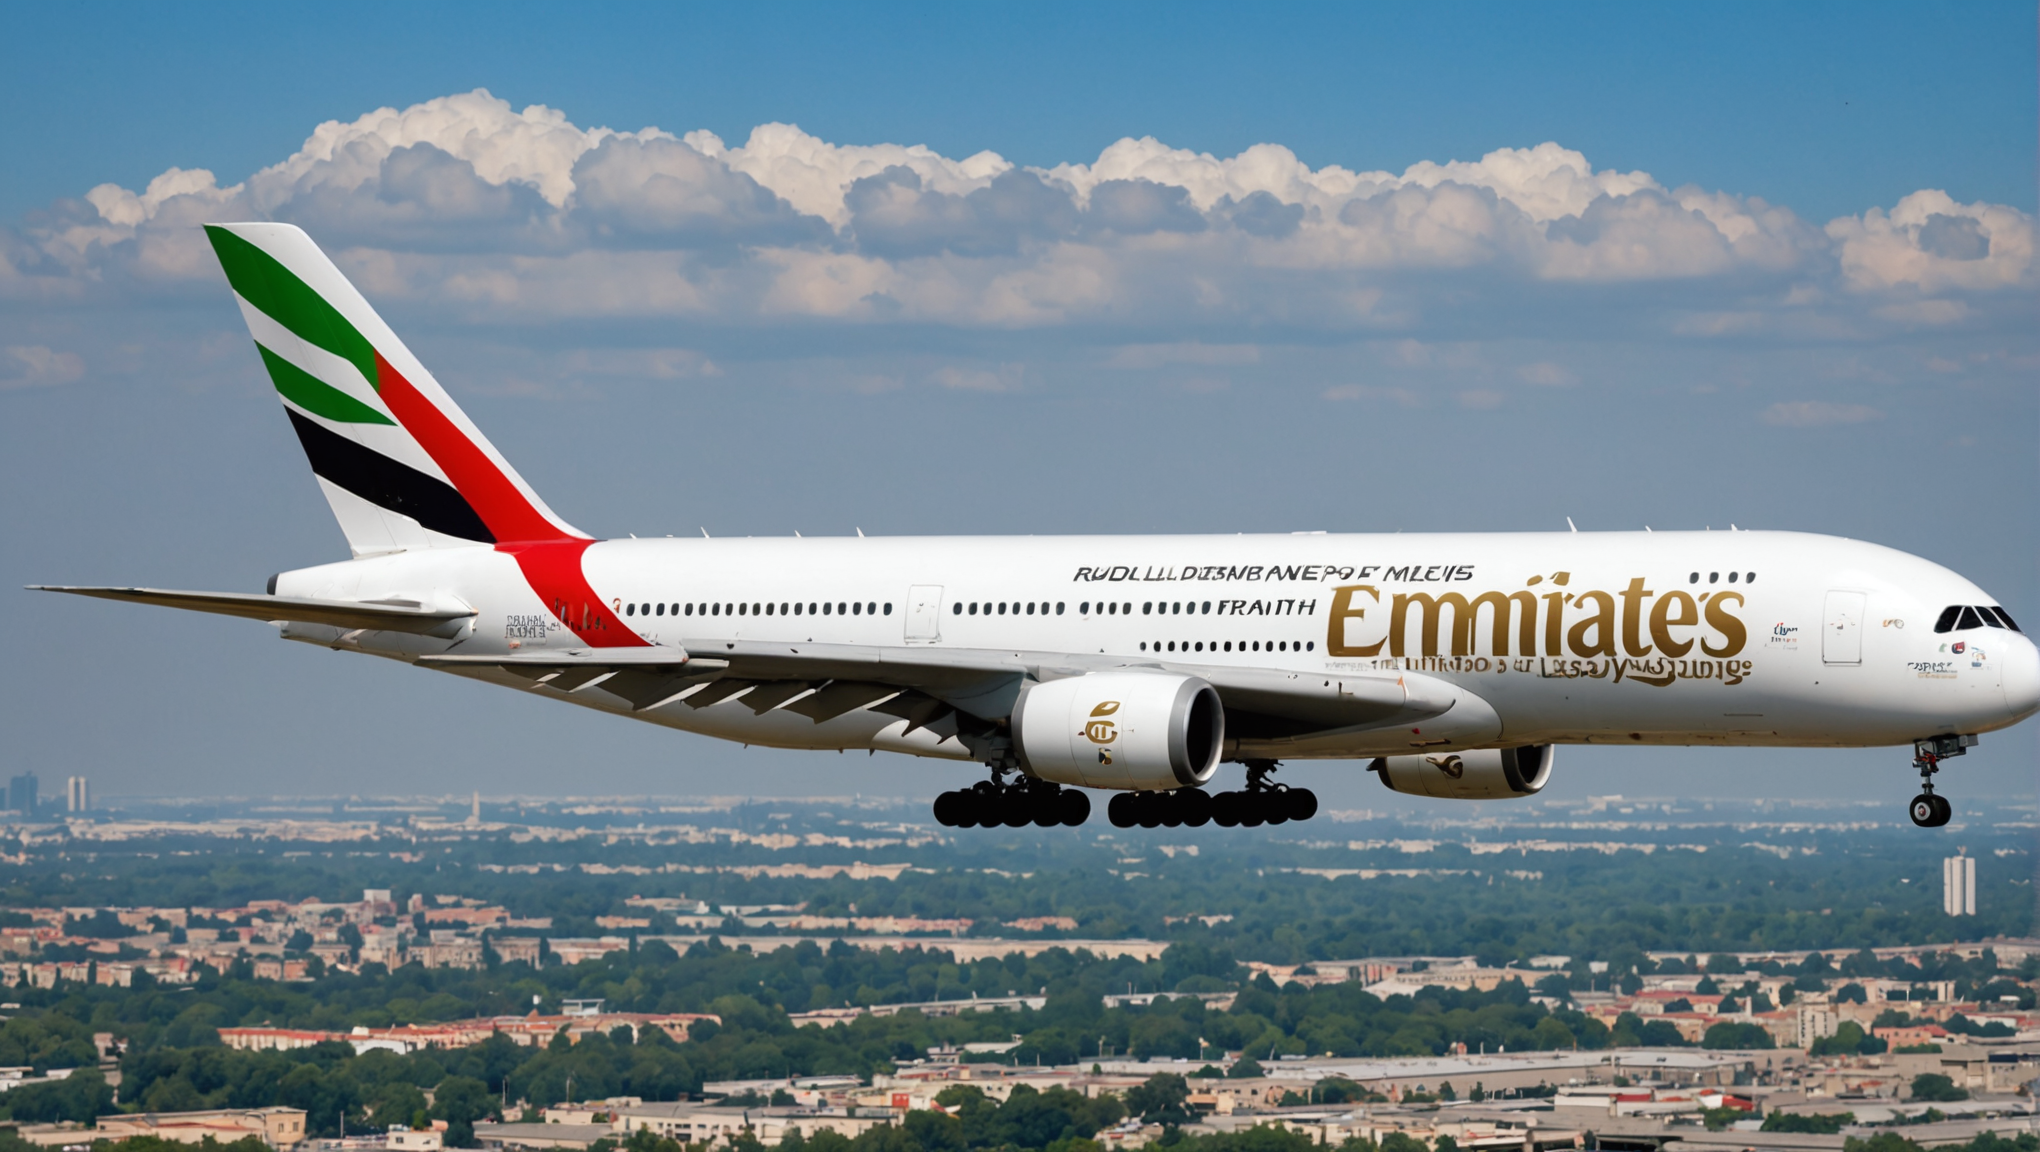 découvrez les opportunités de carrière passionnantes chez emirates lors de ses journées de recrutement ce mois de juillet pour les passionnés de l'aviation.